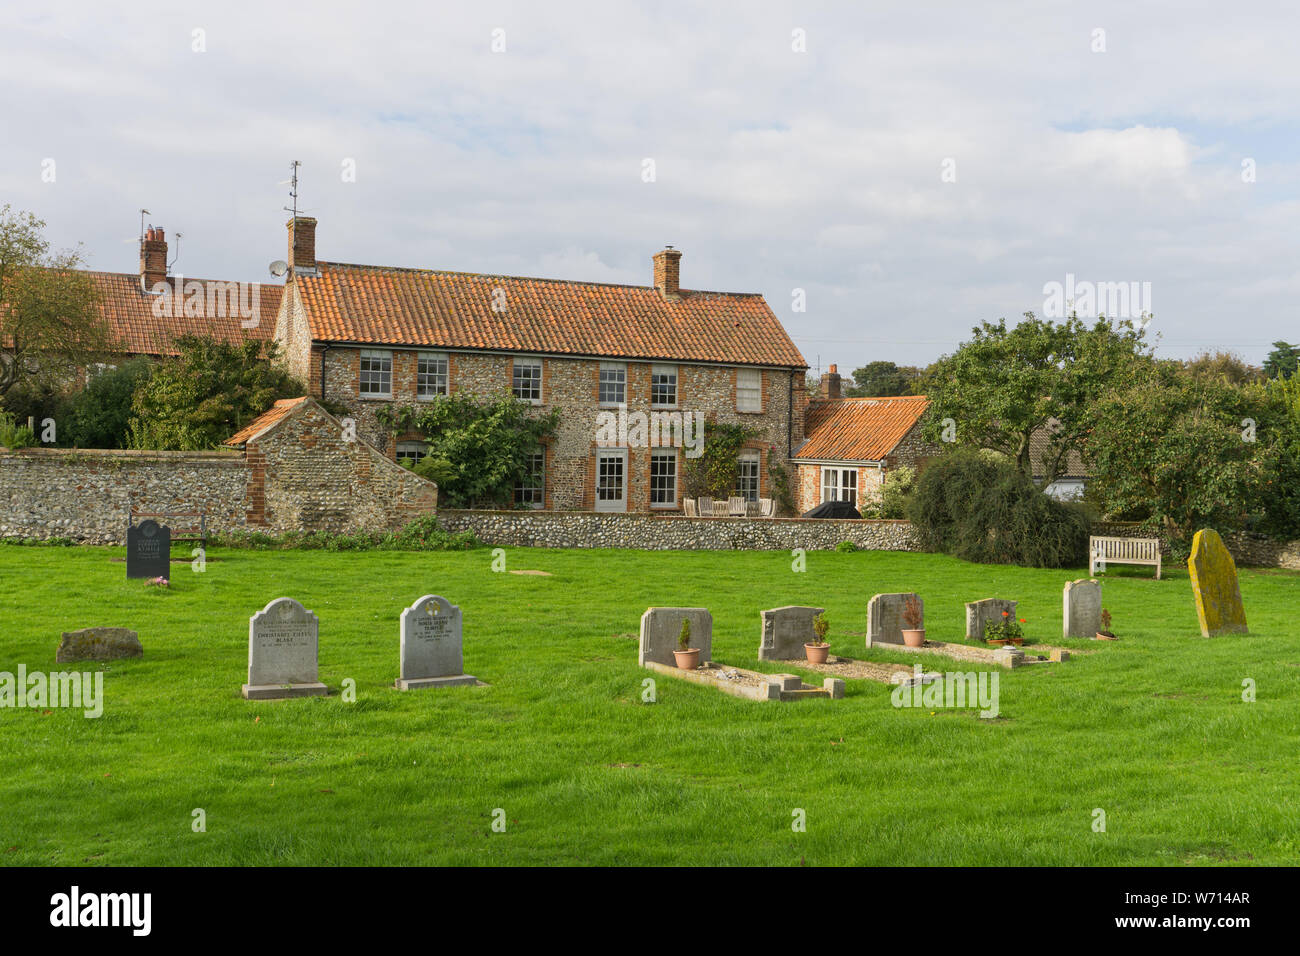 Maison individuelle en briques et silex, maison vue depuis l'église de Tous les Saints dans le village de Morston, Norfolk, UK Banque D'Images